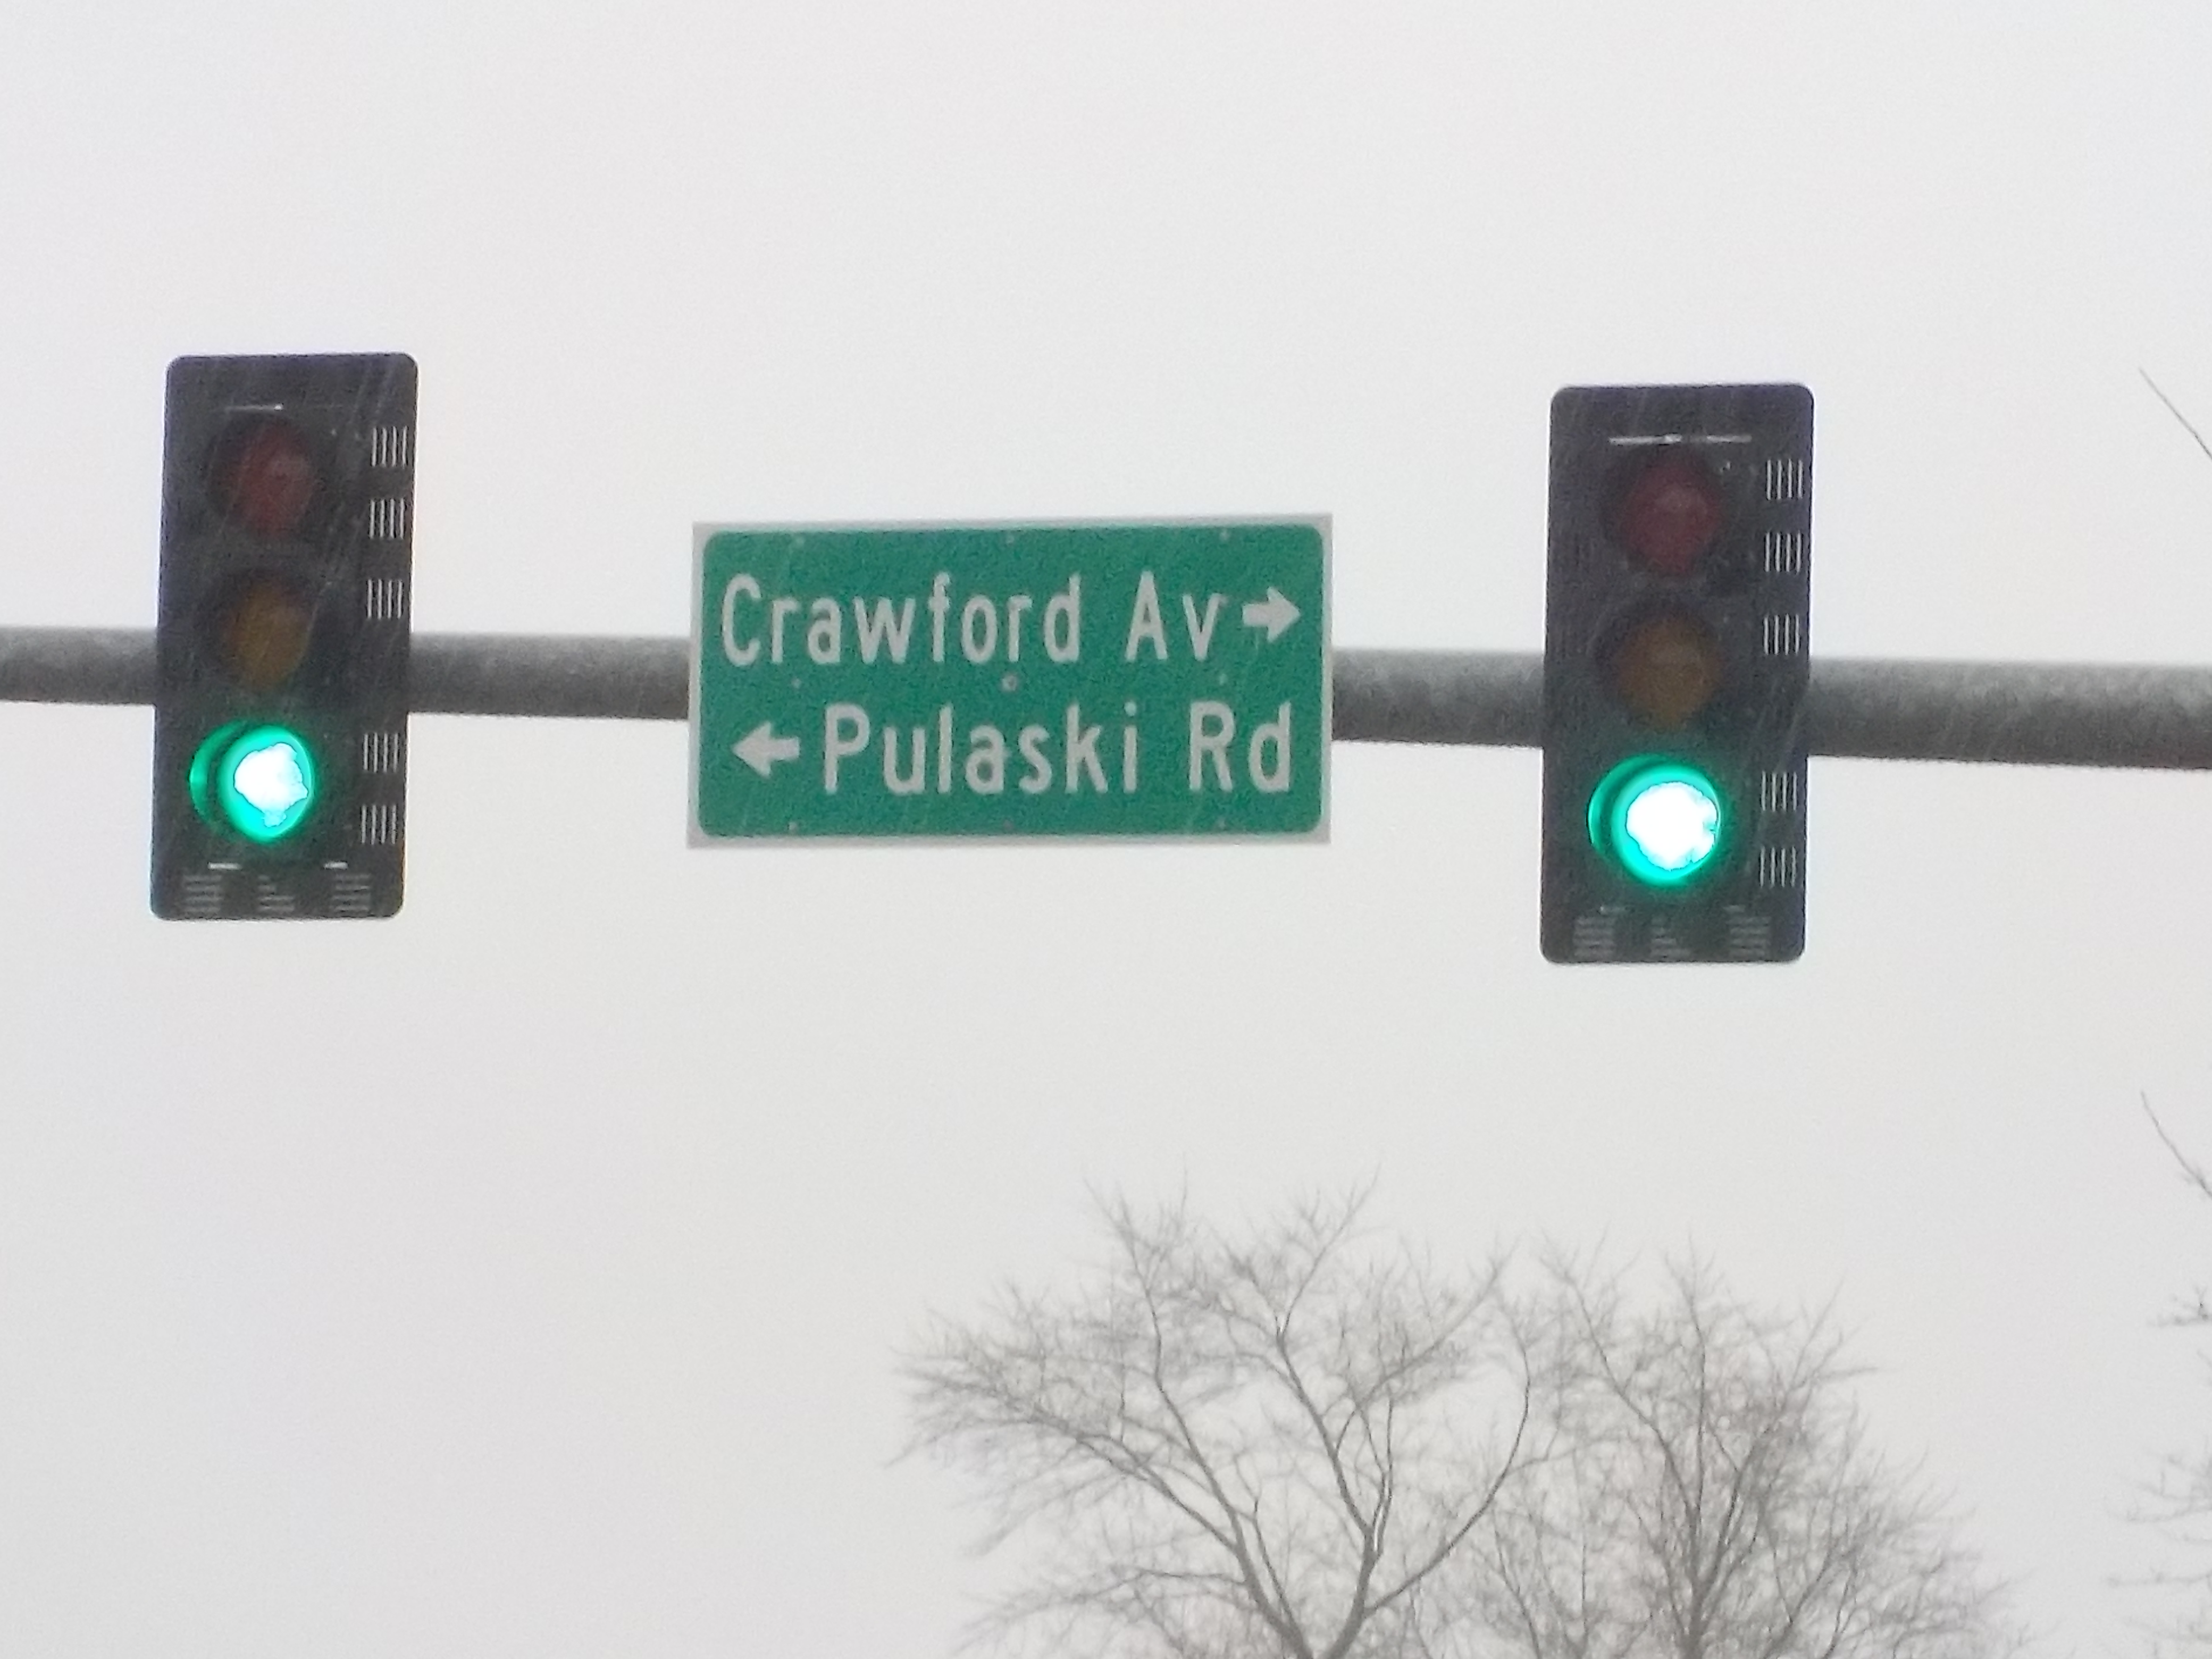 Pulaski Road and Crawford